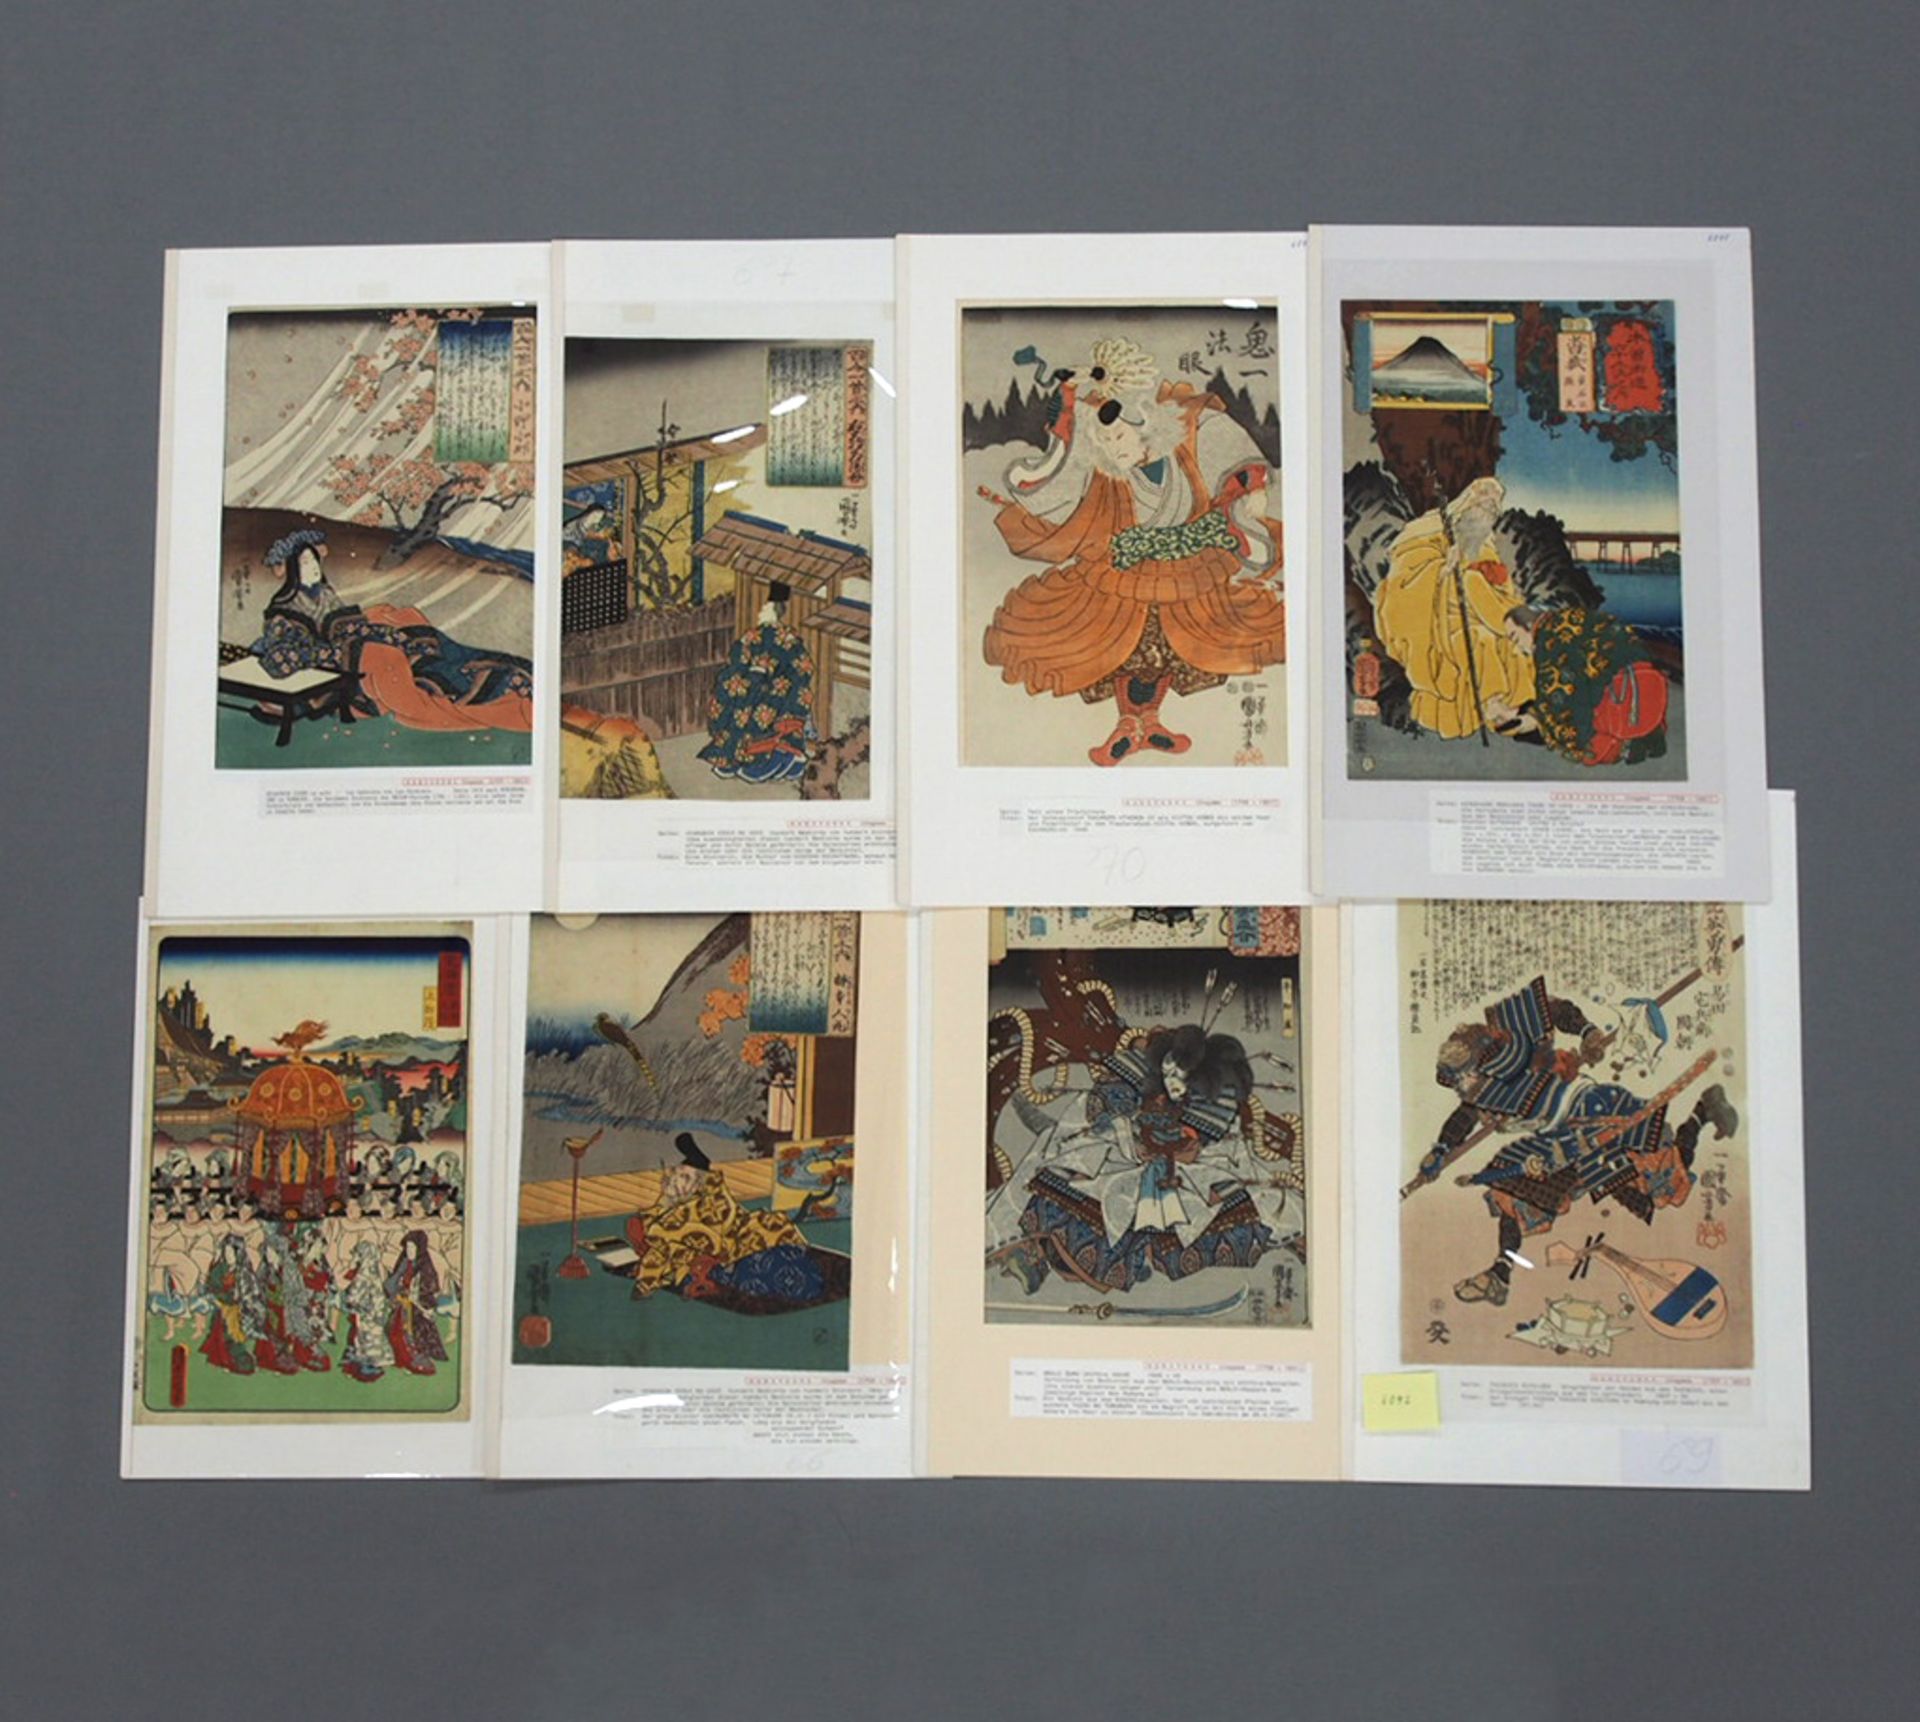 KUNIYOSHI, Utagawa: Acht Buchillustrationen